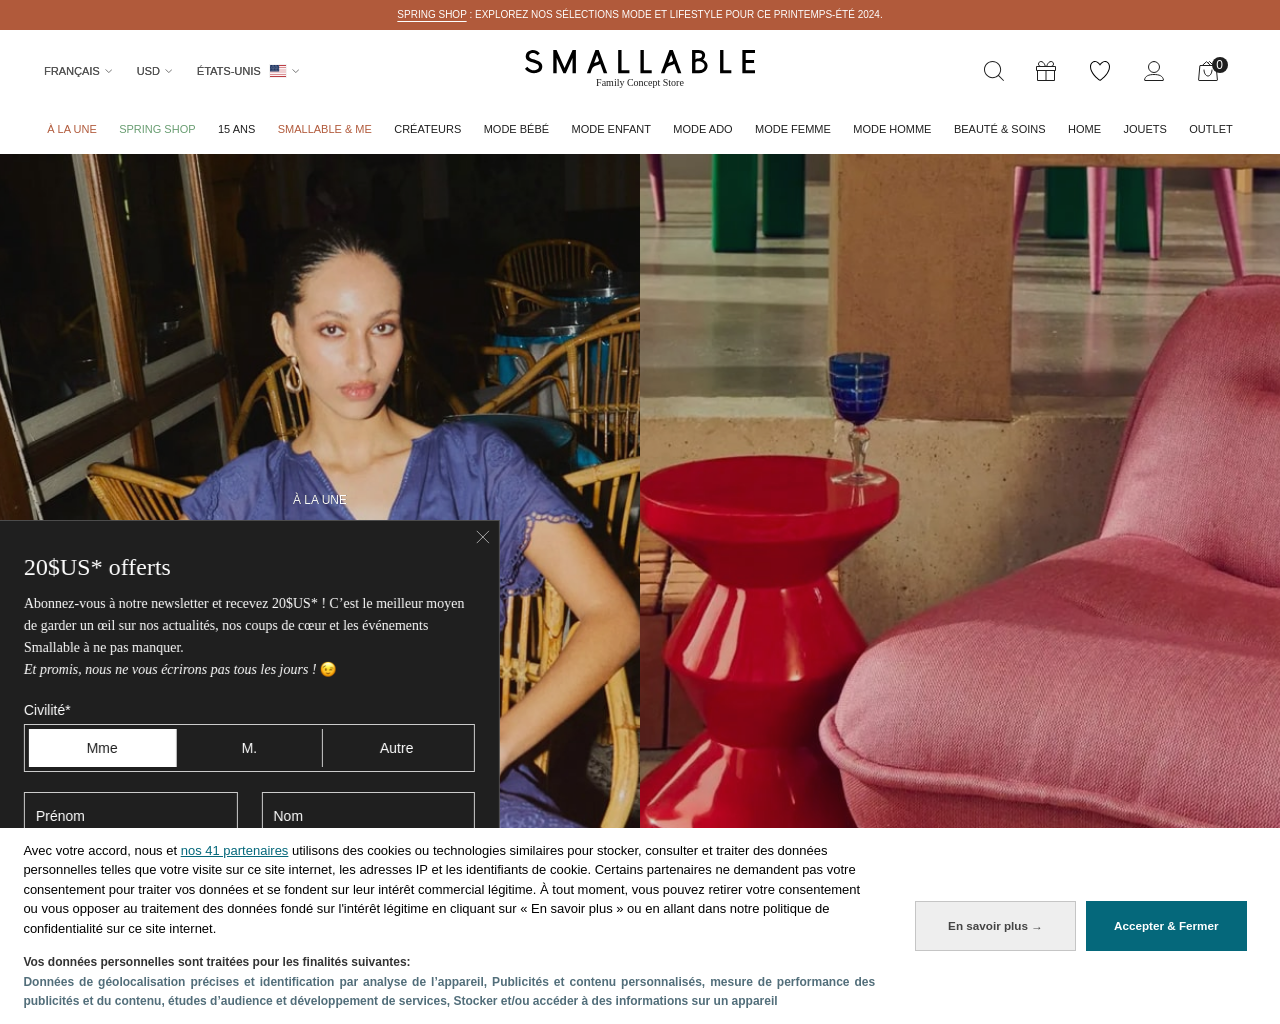 smallable.com